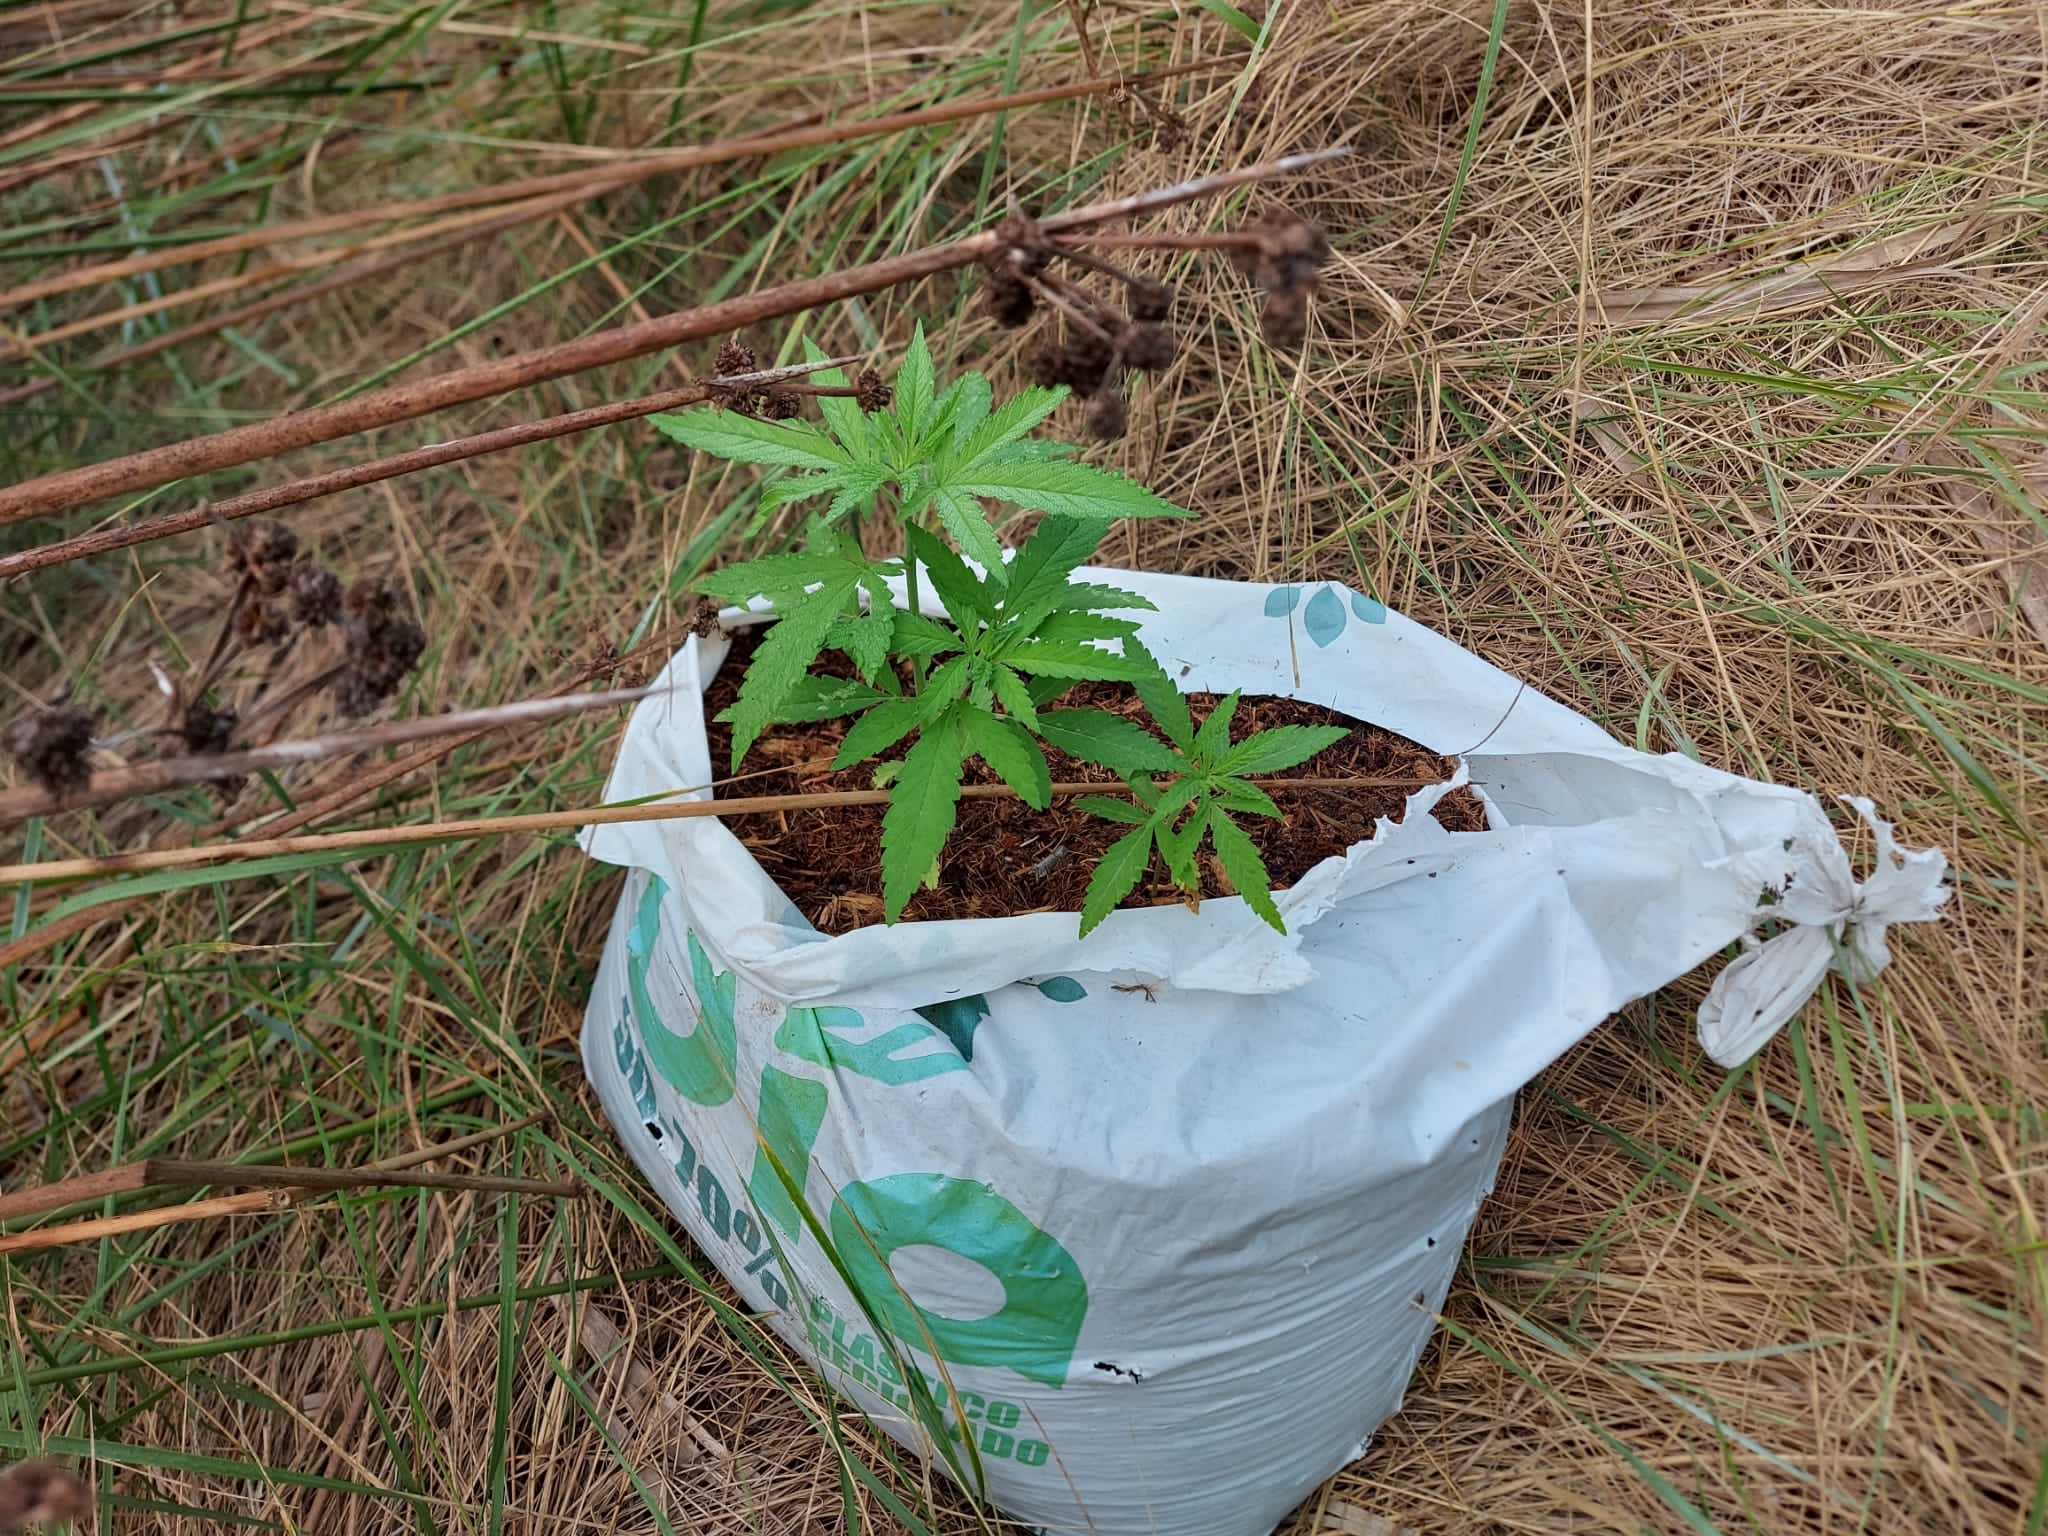 El servicio de Guardería Rural del Consorcio gestor del Paisaje Protegido de la Desembocadura del río Mijares retira una pequeña plantación ilegal de marihuana